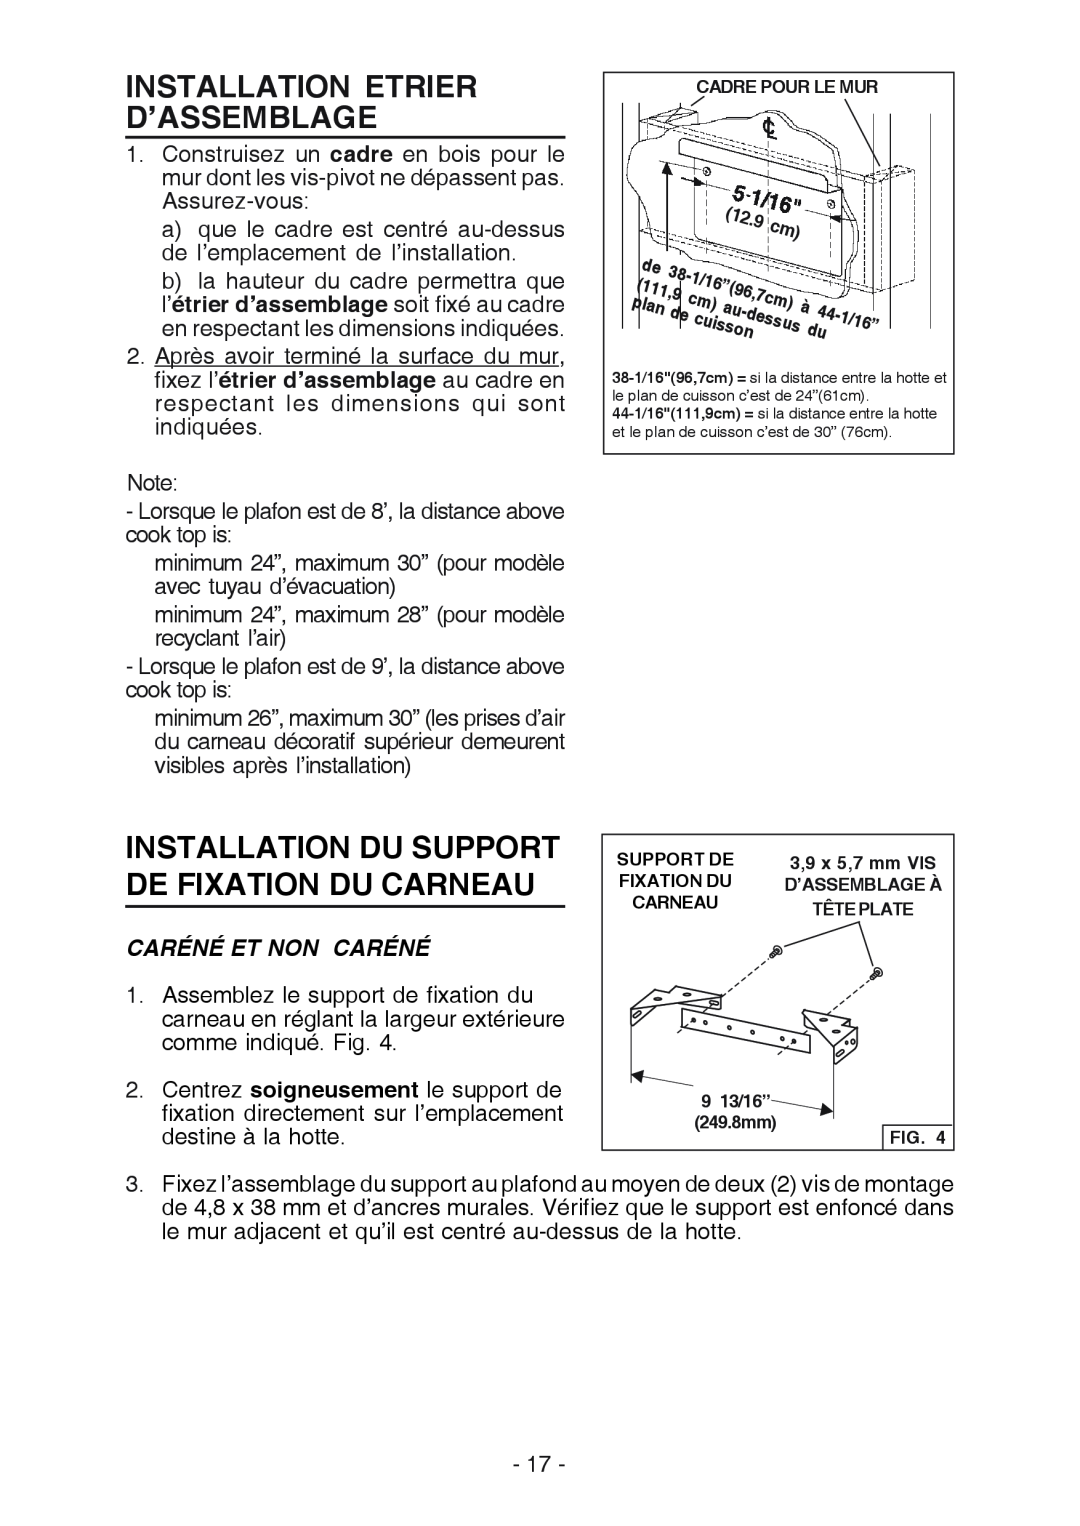 Broan RM524204 Installation Etrier D’Assemblage, Installation Du Support De Fixation Du Carneau, Caréné Et Non Caréné 